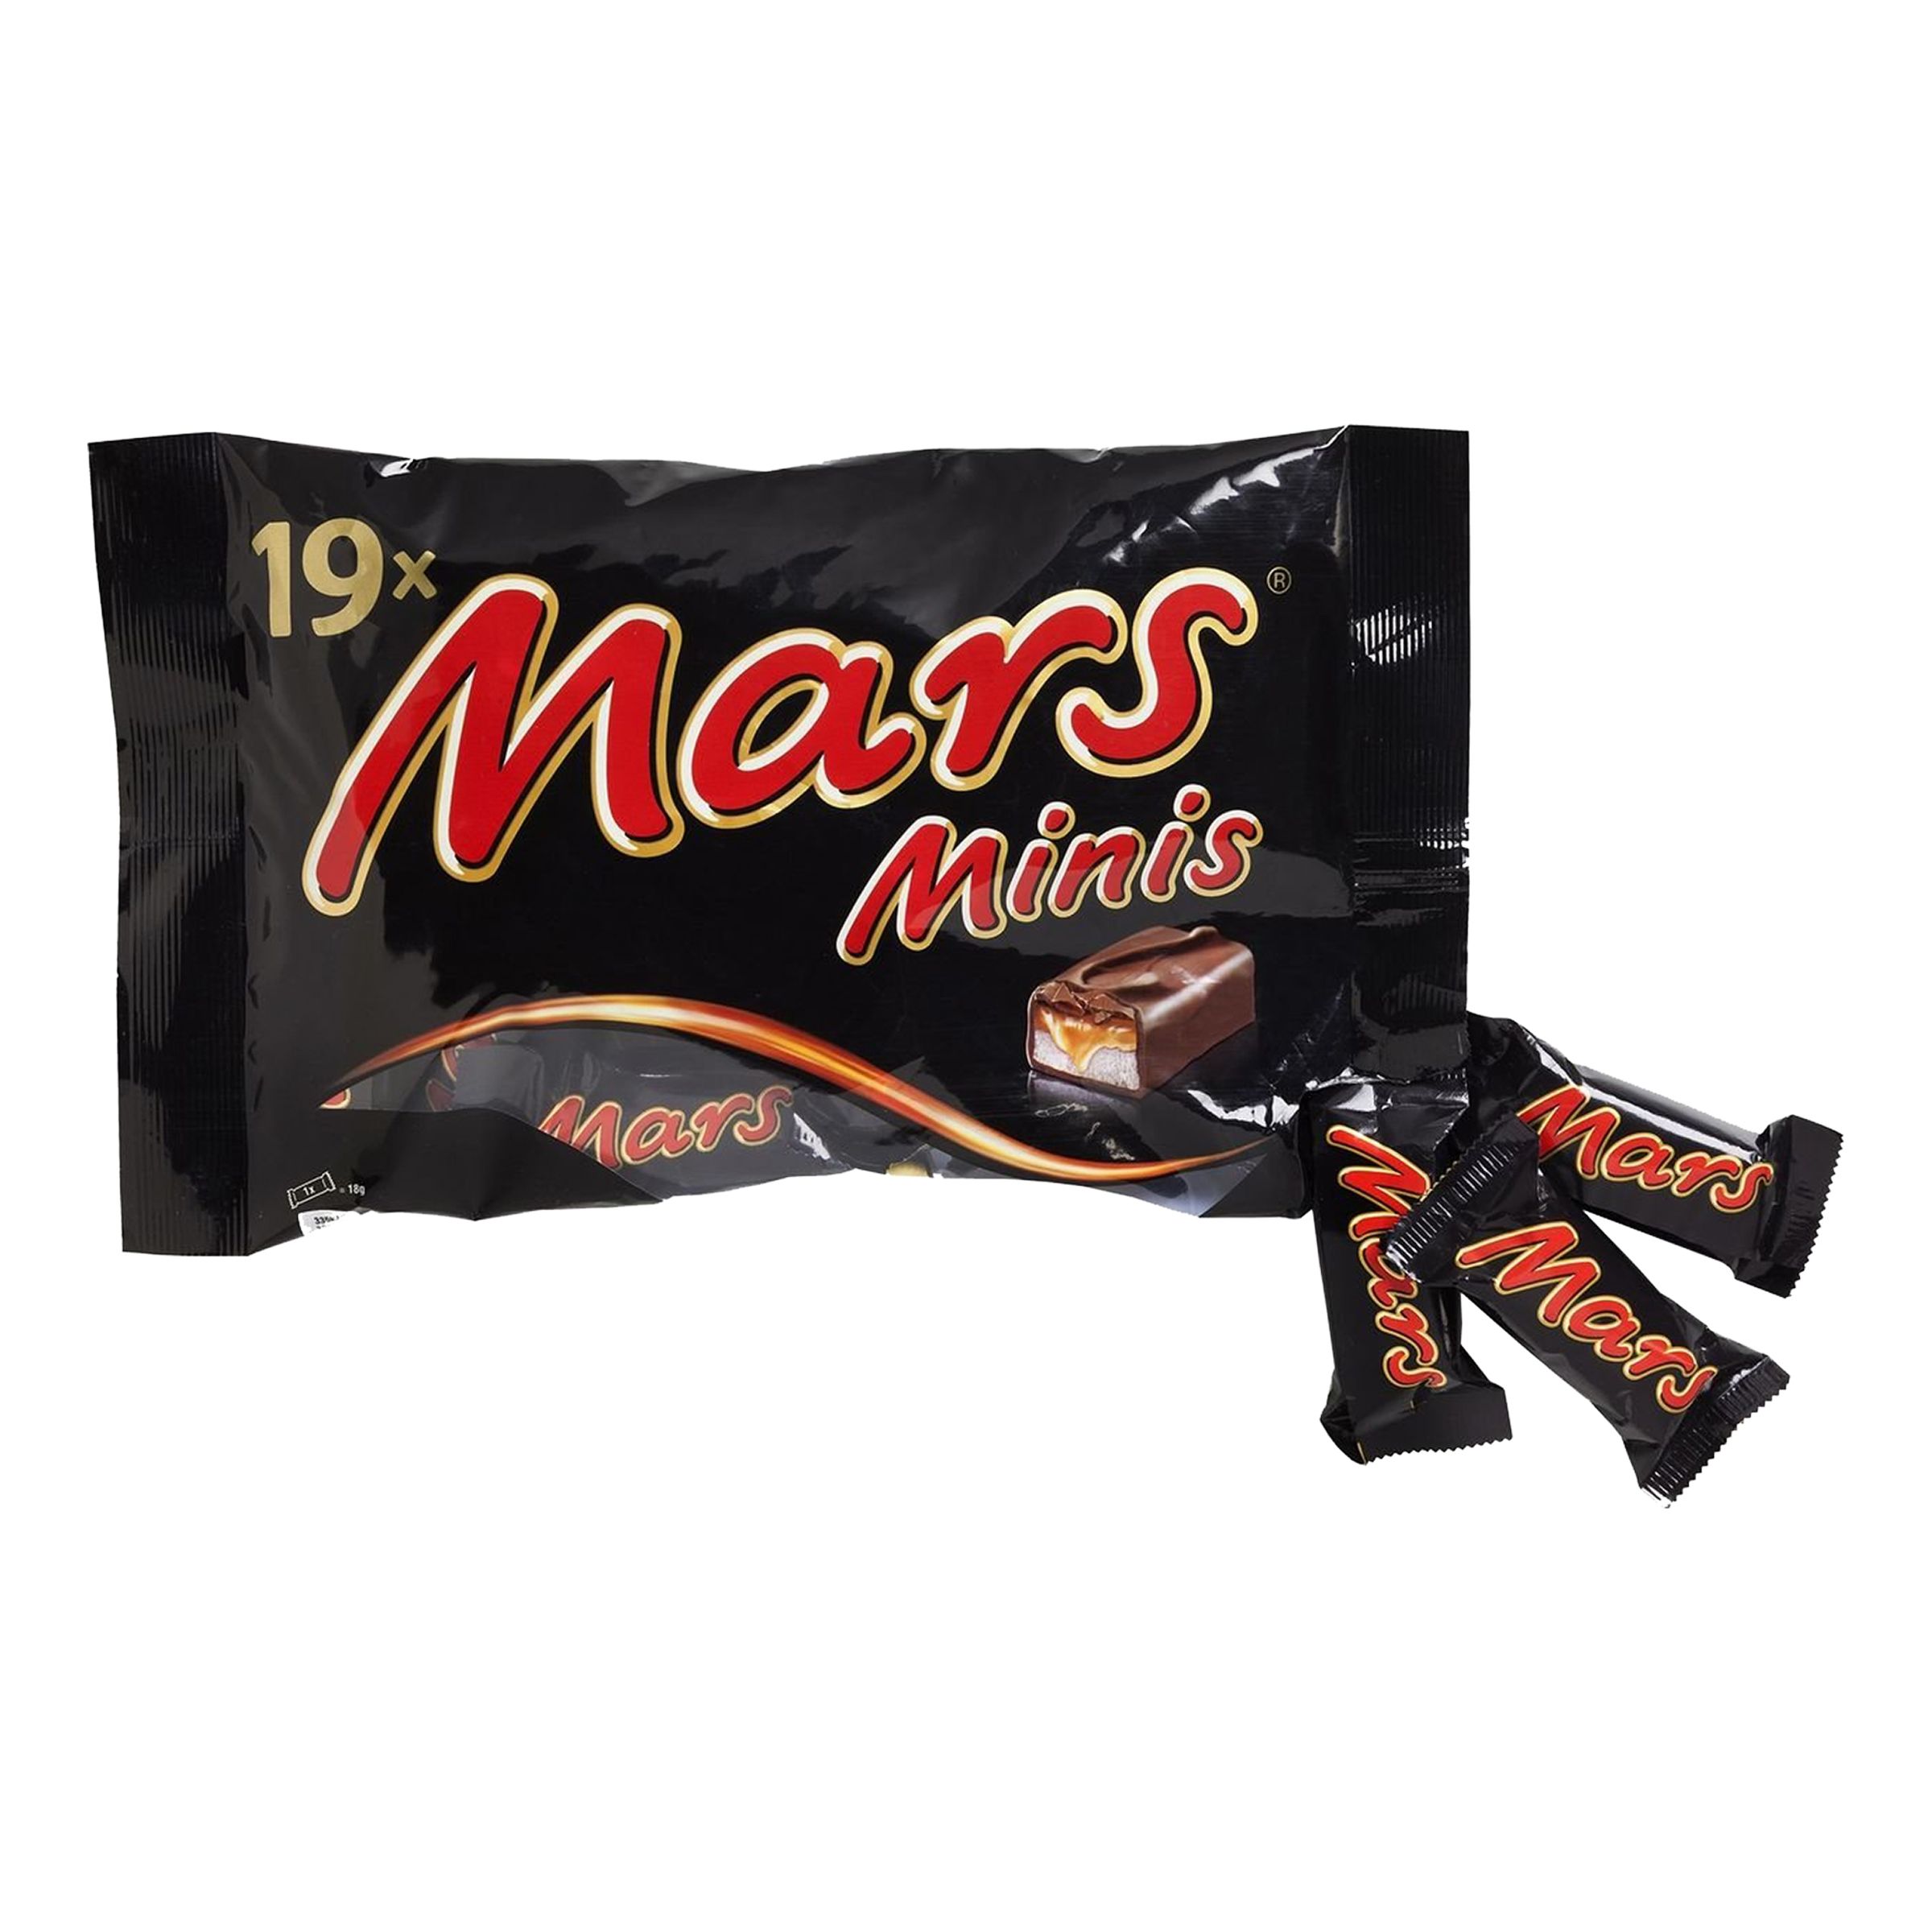 Mars Minis i Påse - 366 gram